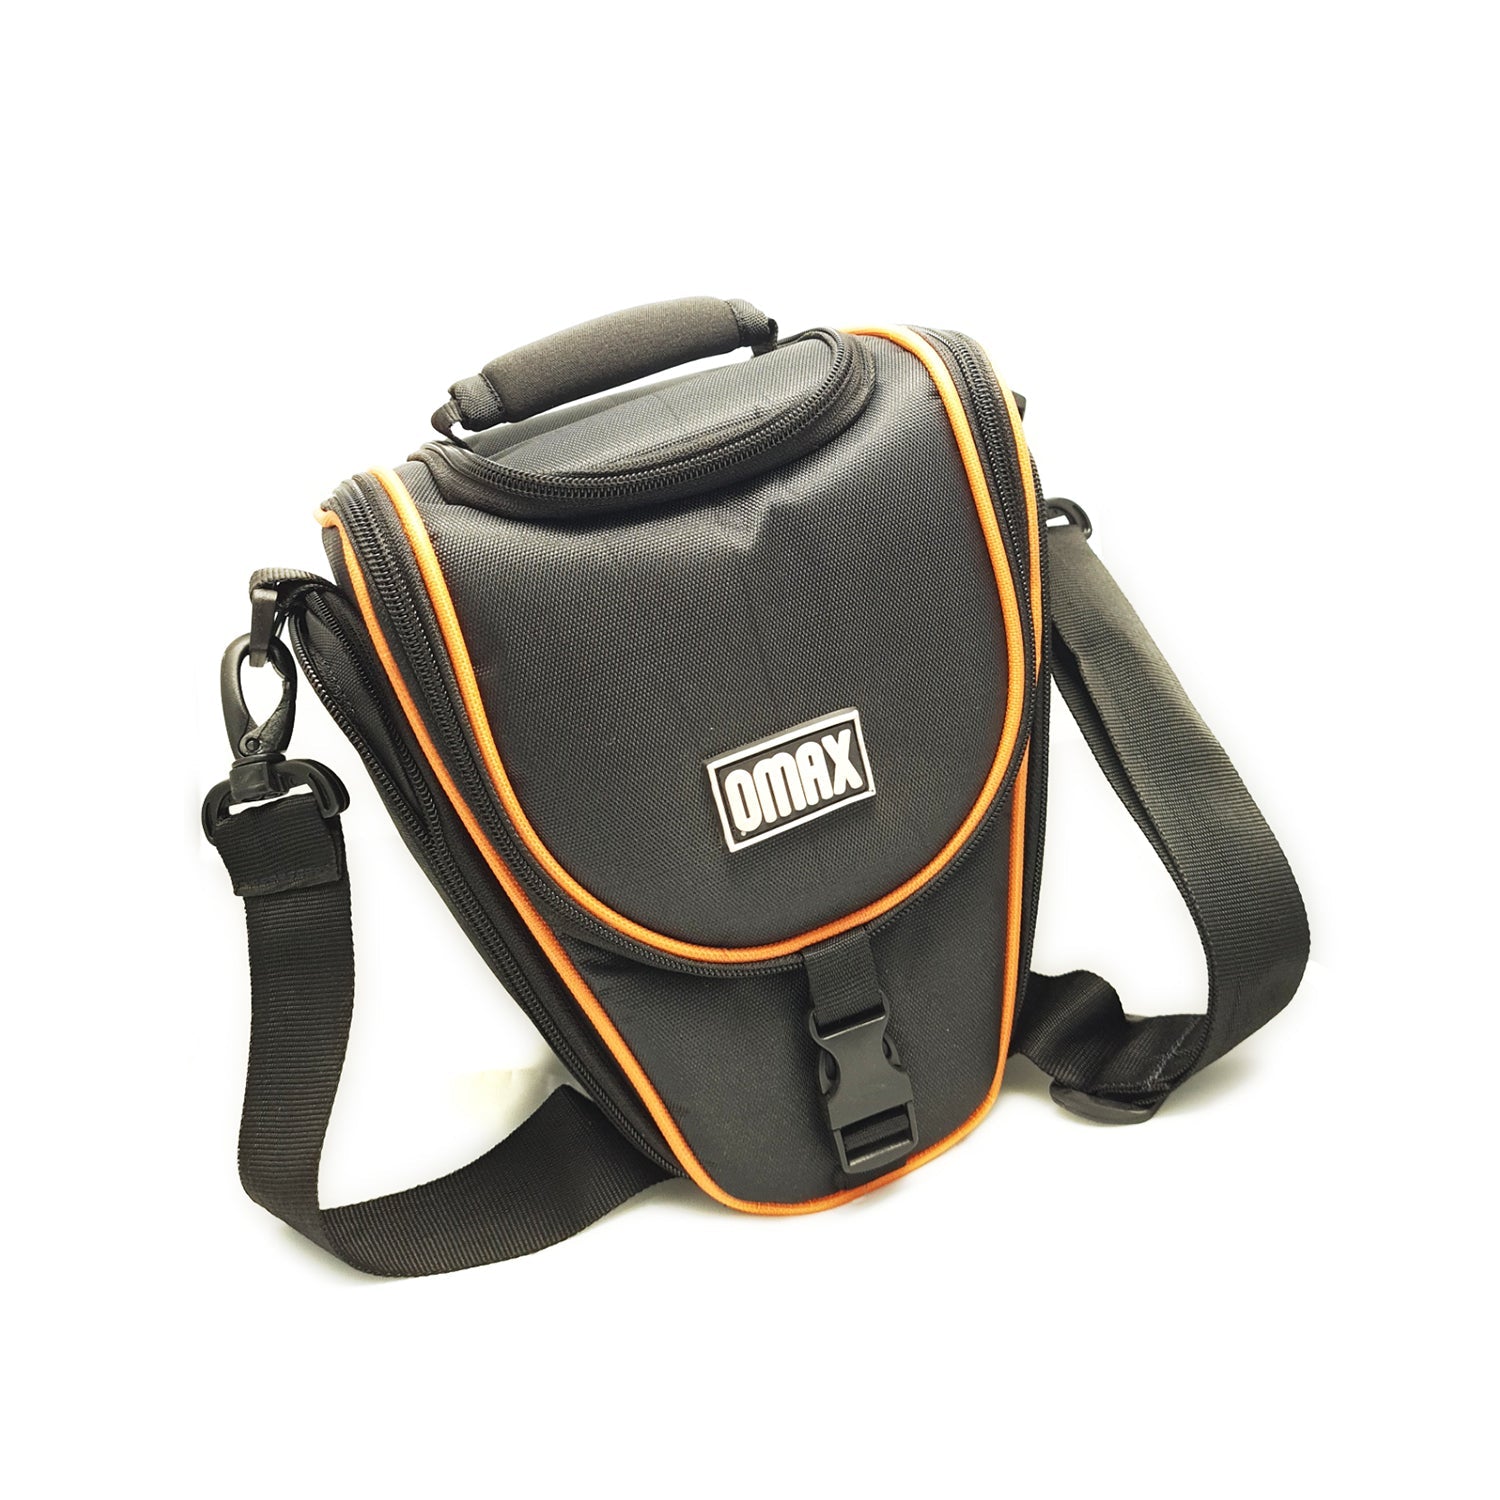 Omax Camera Bag Veo Go 16Z Shoulder Bag for P900 camera - The Camerashop